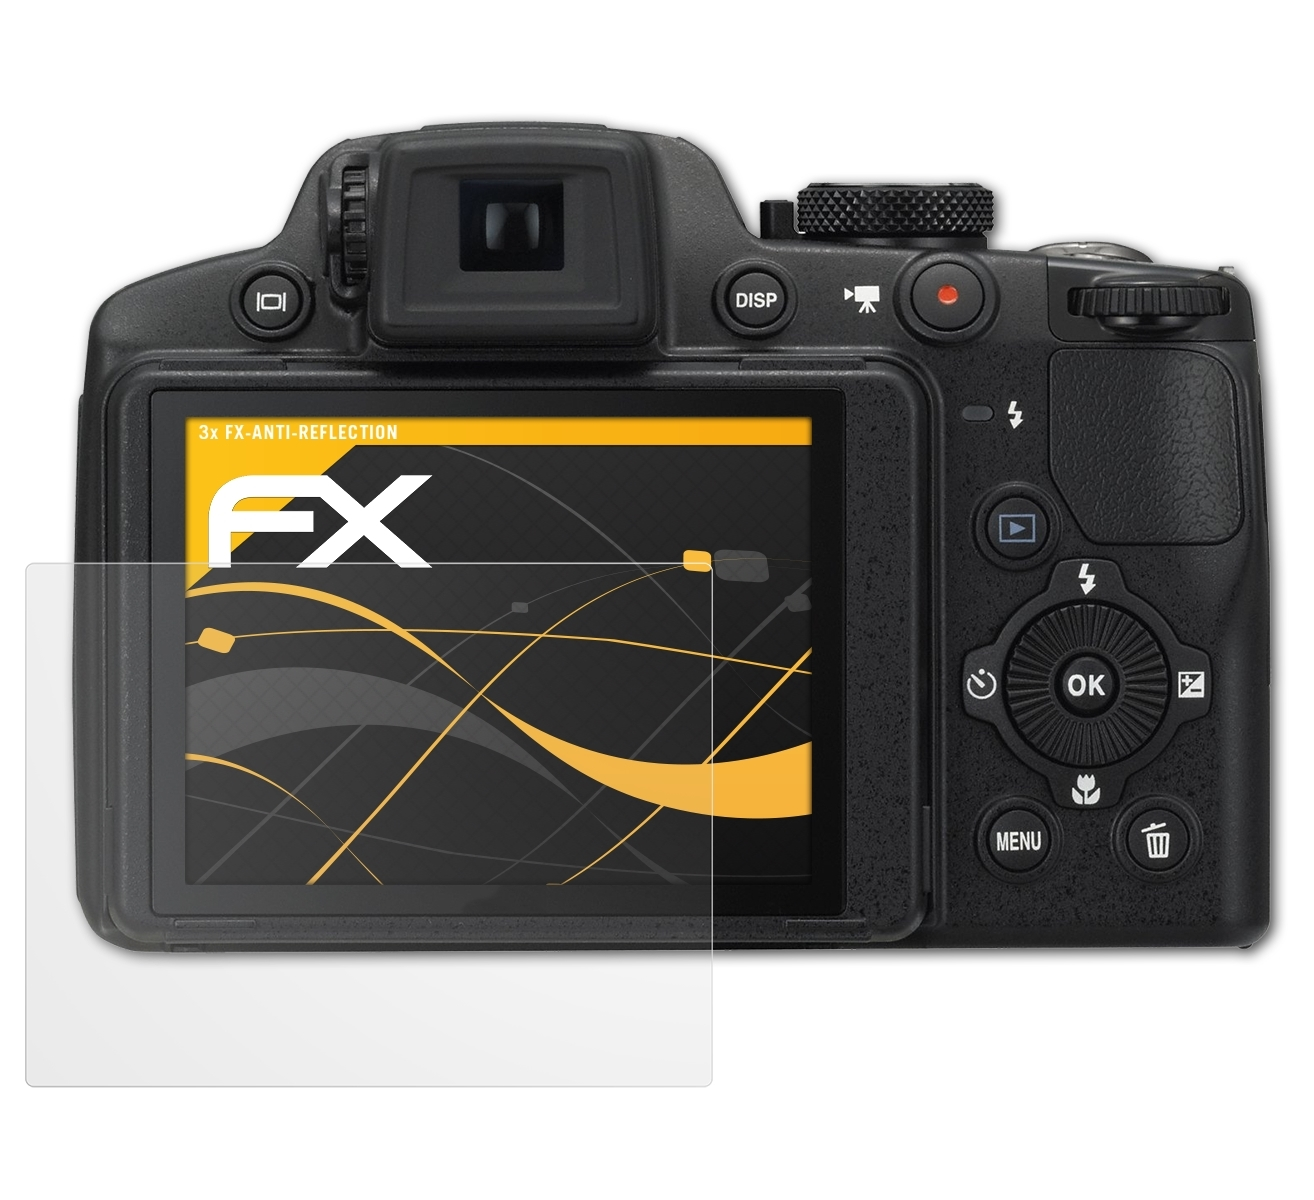 Displayschutz(für 3x P510) Coolpix ATFOLIX Nikon FX-Antireflex